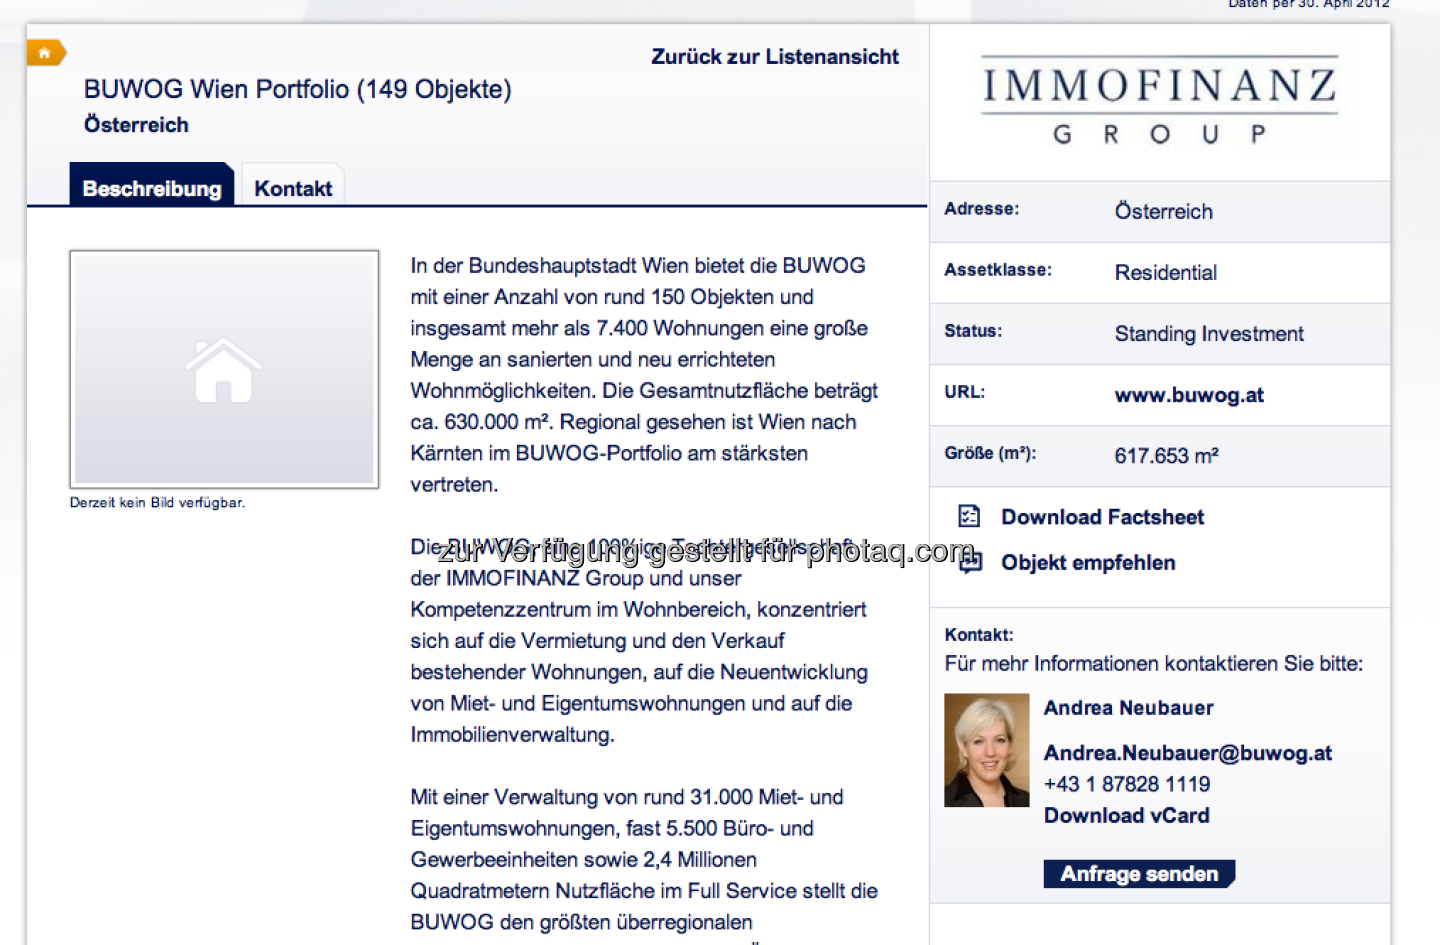 Das Buwog-Wien-Portfolio unter http://properties.immofinanz.com/ (c) Immofinanz